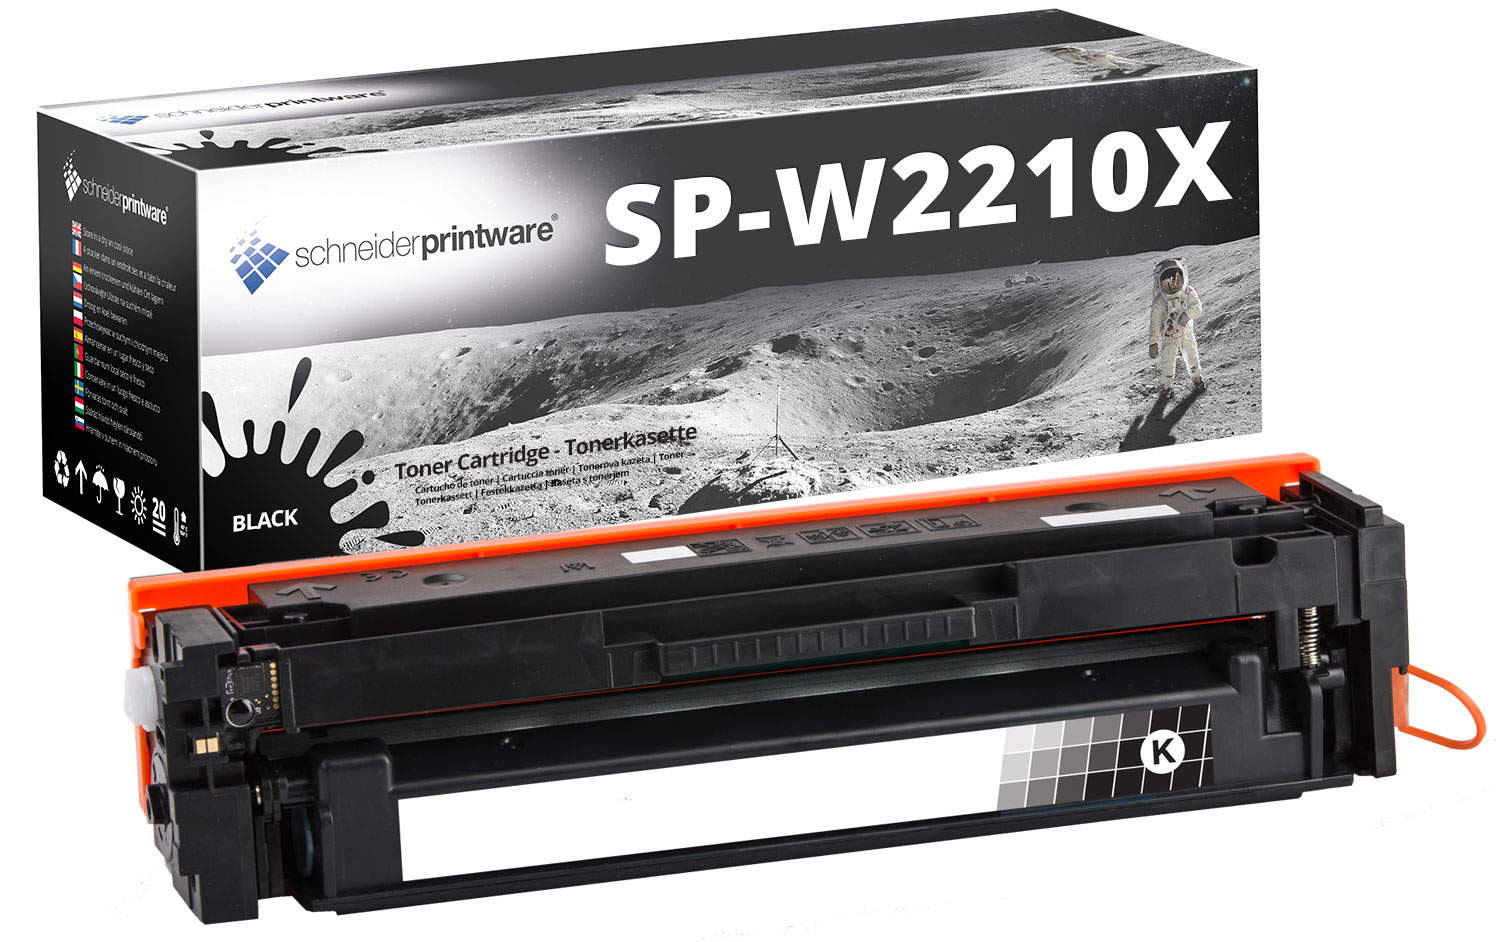 Schneiderprintware Toner ersetzt HP 207X W2210X